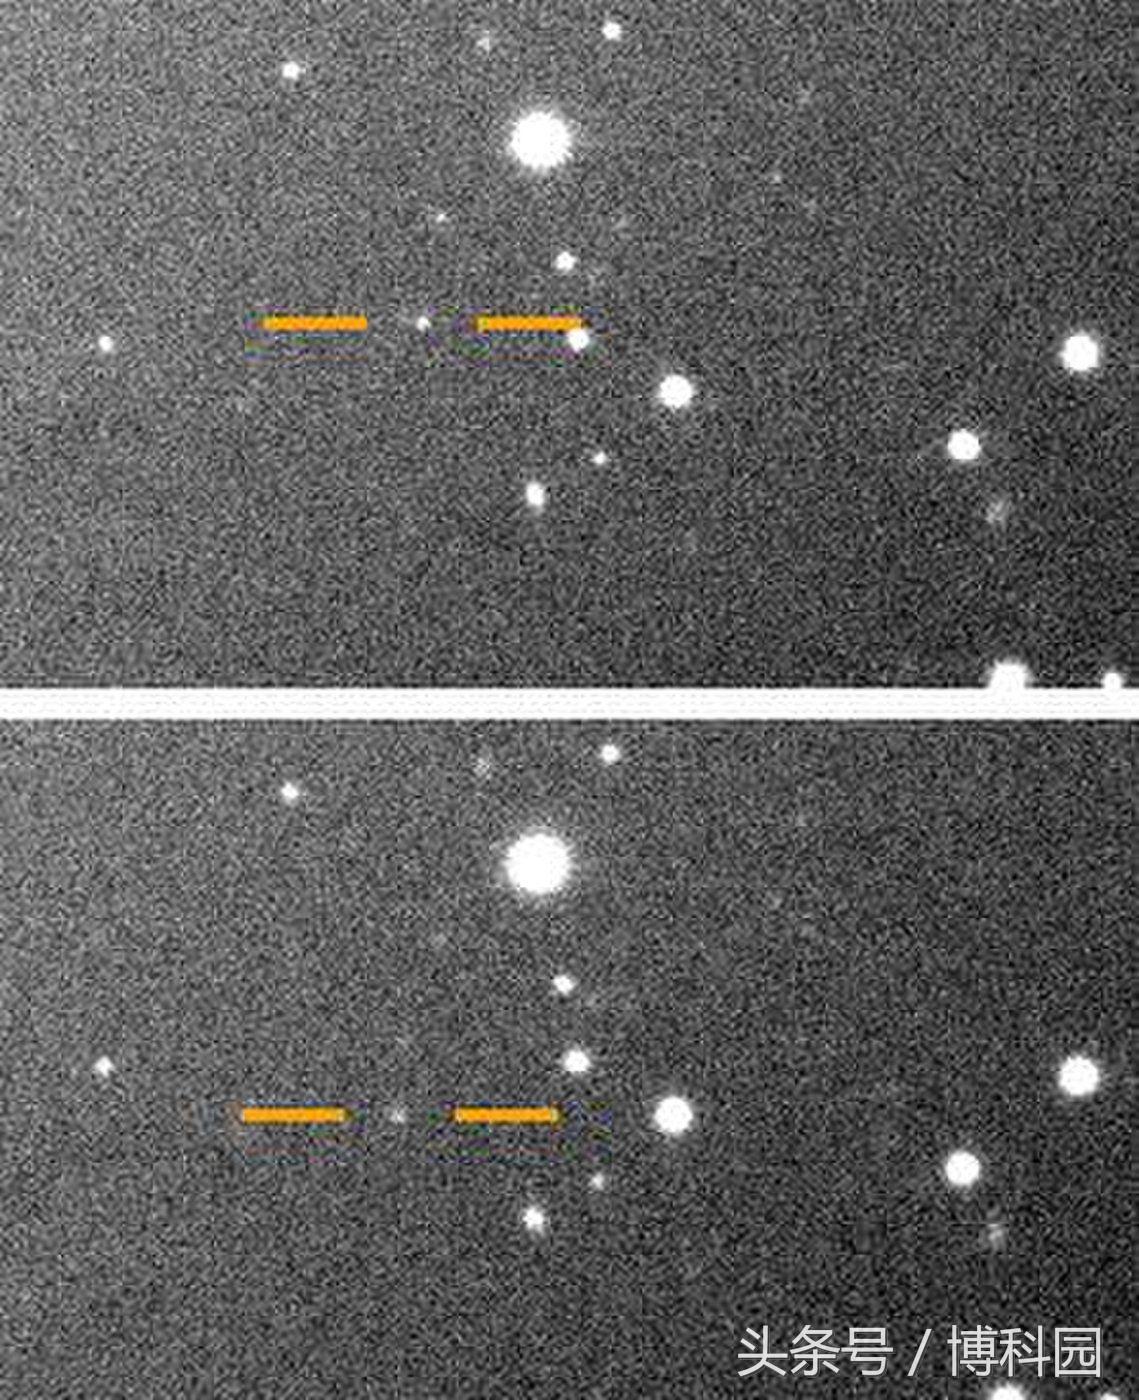 在木星12颗新发现的卫星中发现一颗奇怪卫星